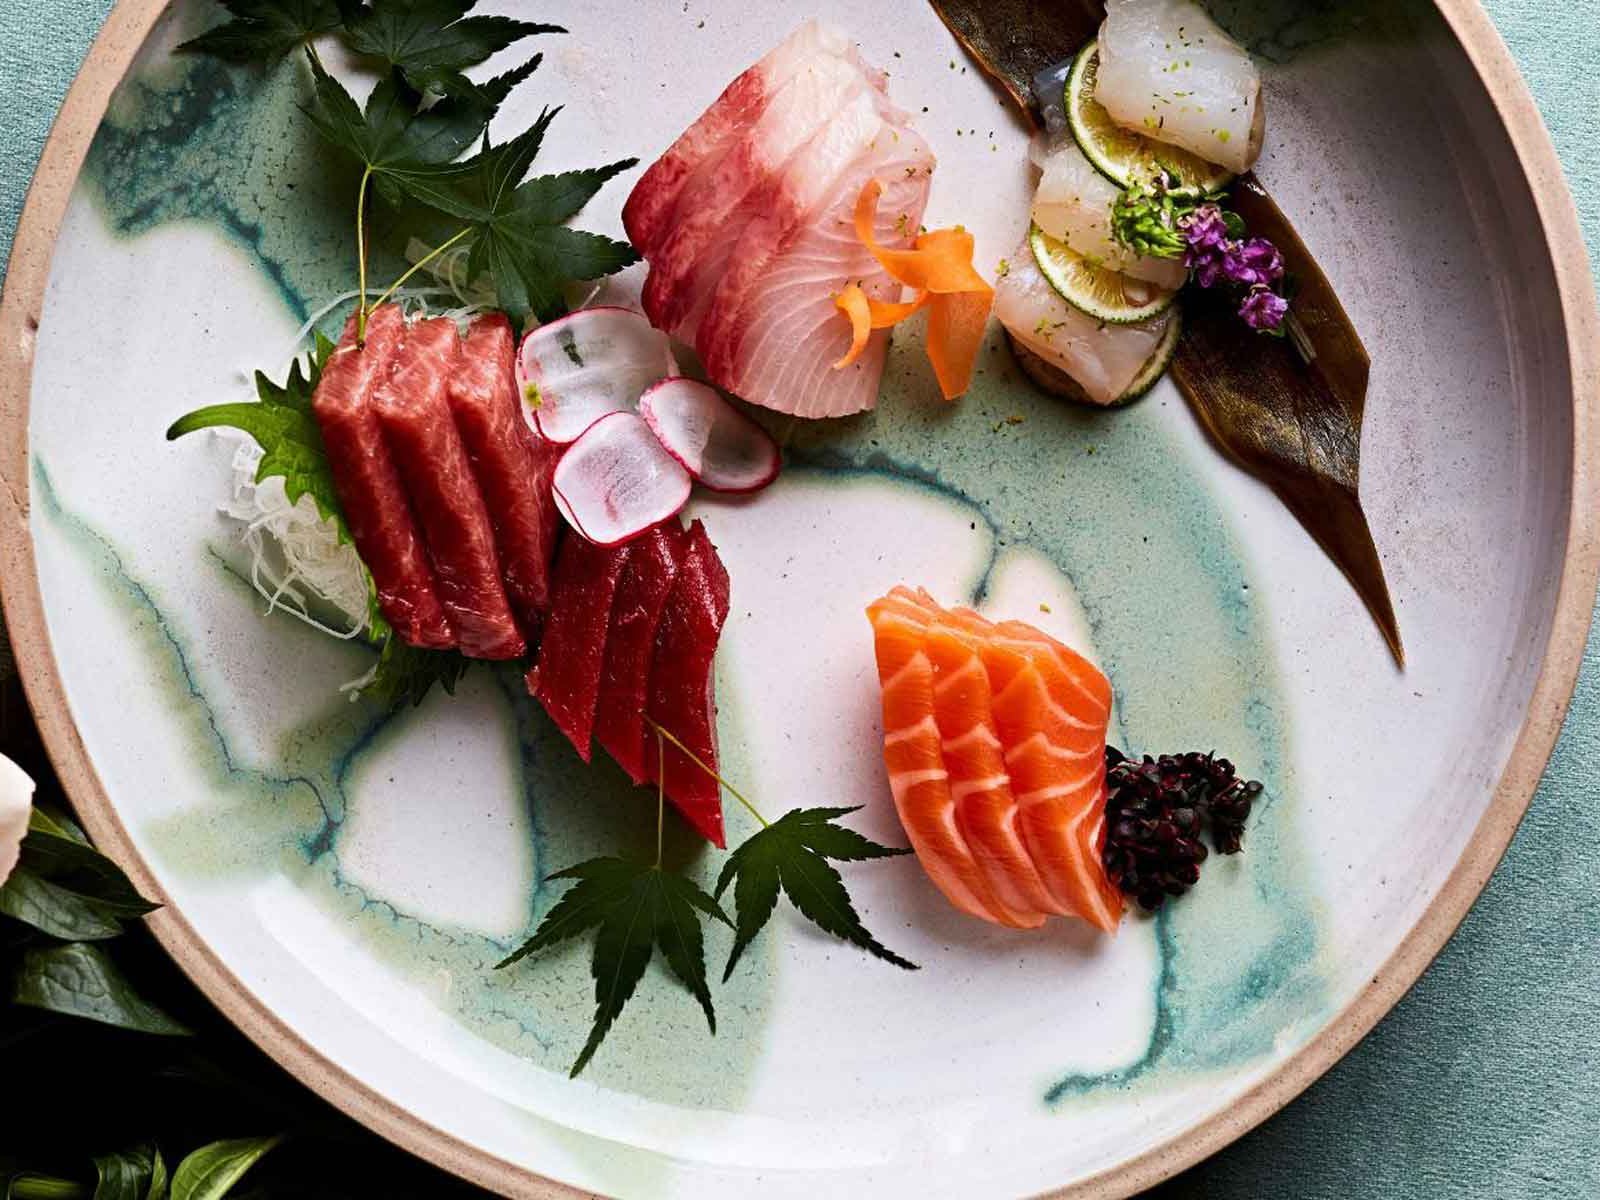 A dish of sashimi at KOYN restaurant.